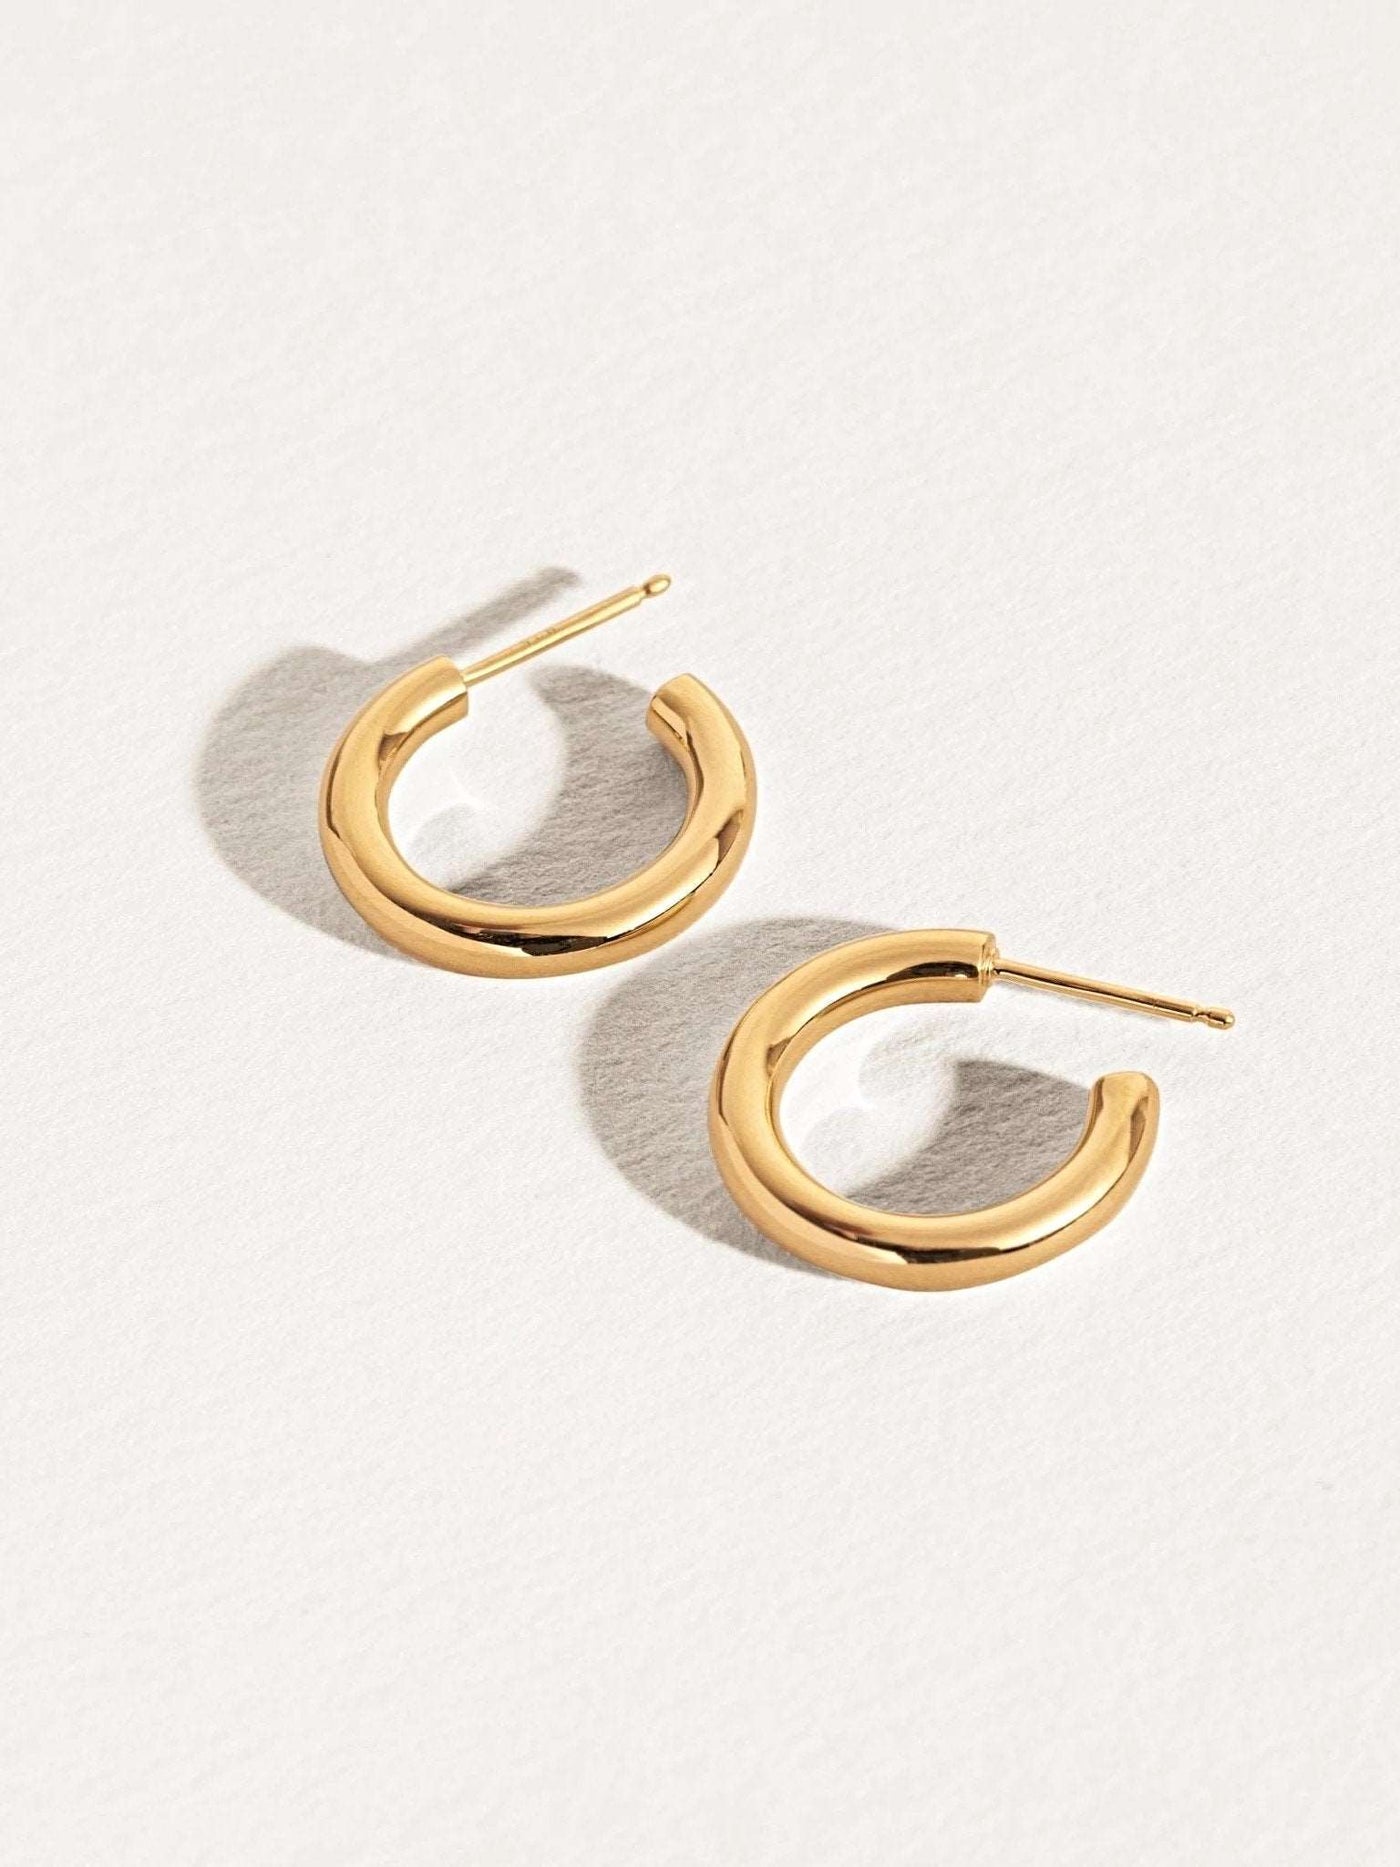 Bassel Chunky Hoop Earrings - 24K Gold PlatedBackUpItemsButterfly EarringsLunai Jewelry